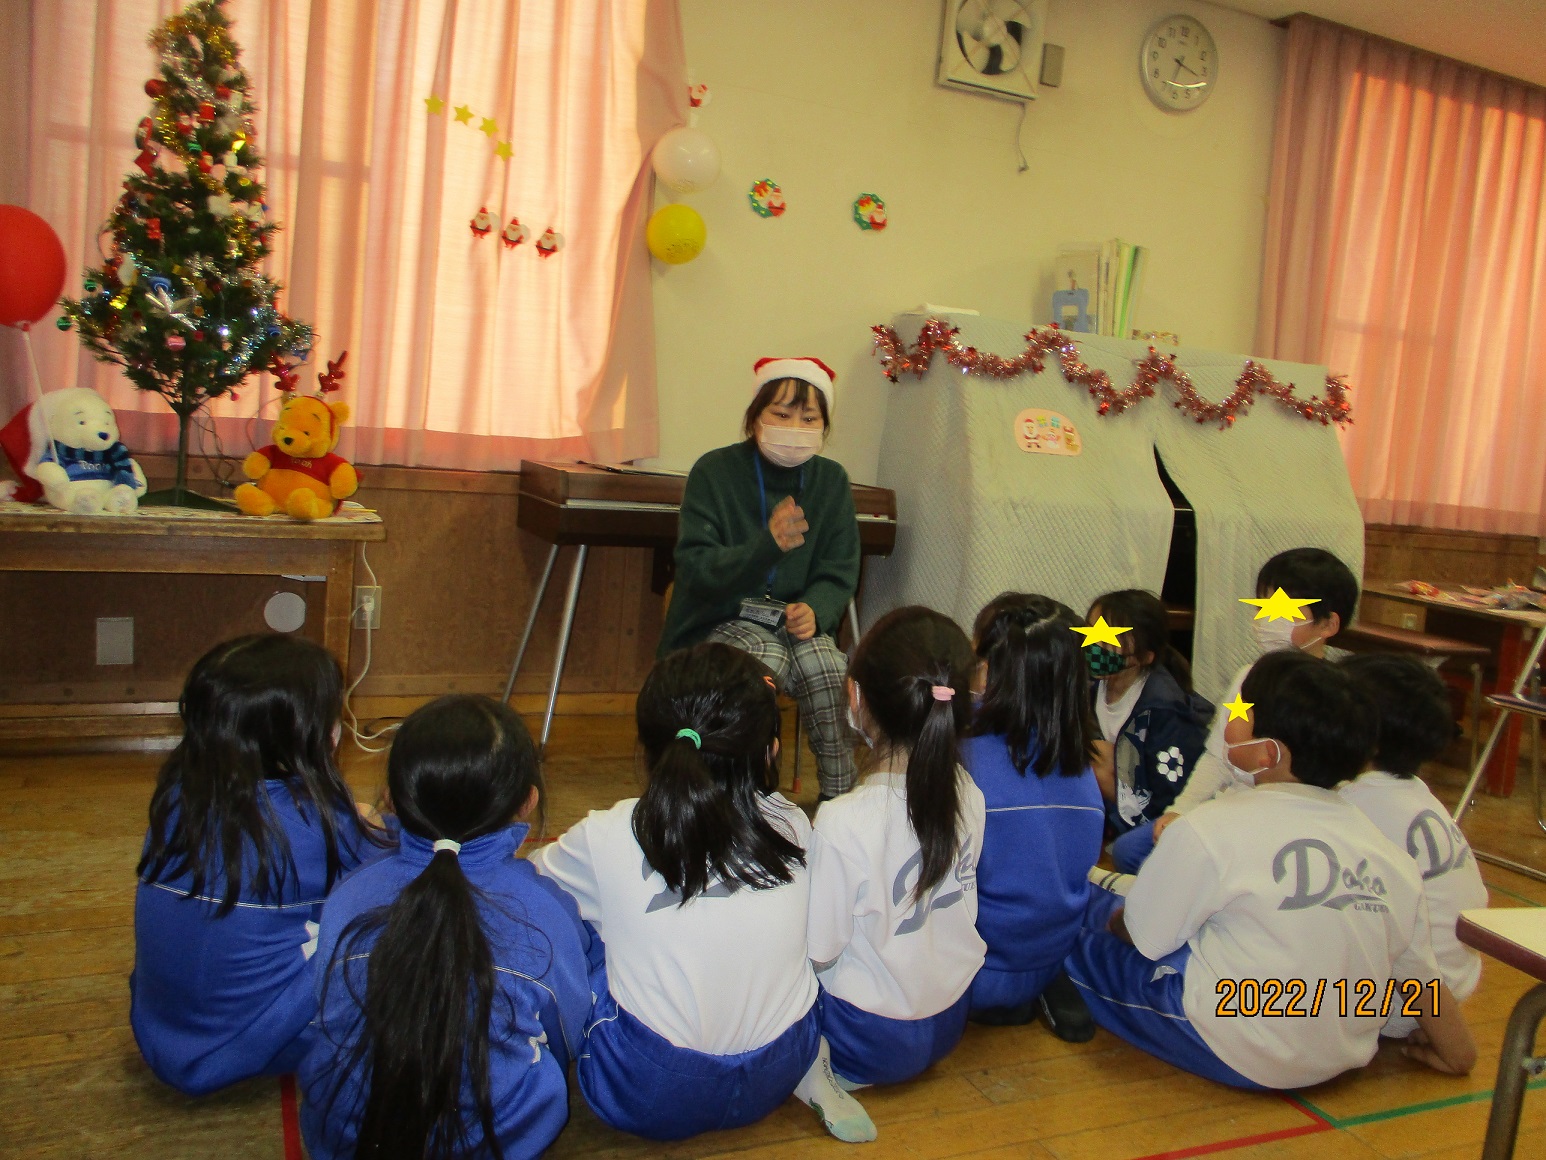 クリスマスイベントで、クリスマスのお話を聞く子供たち